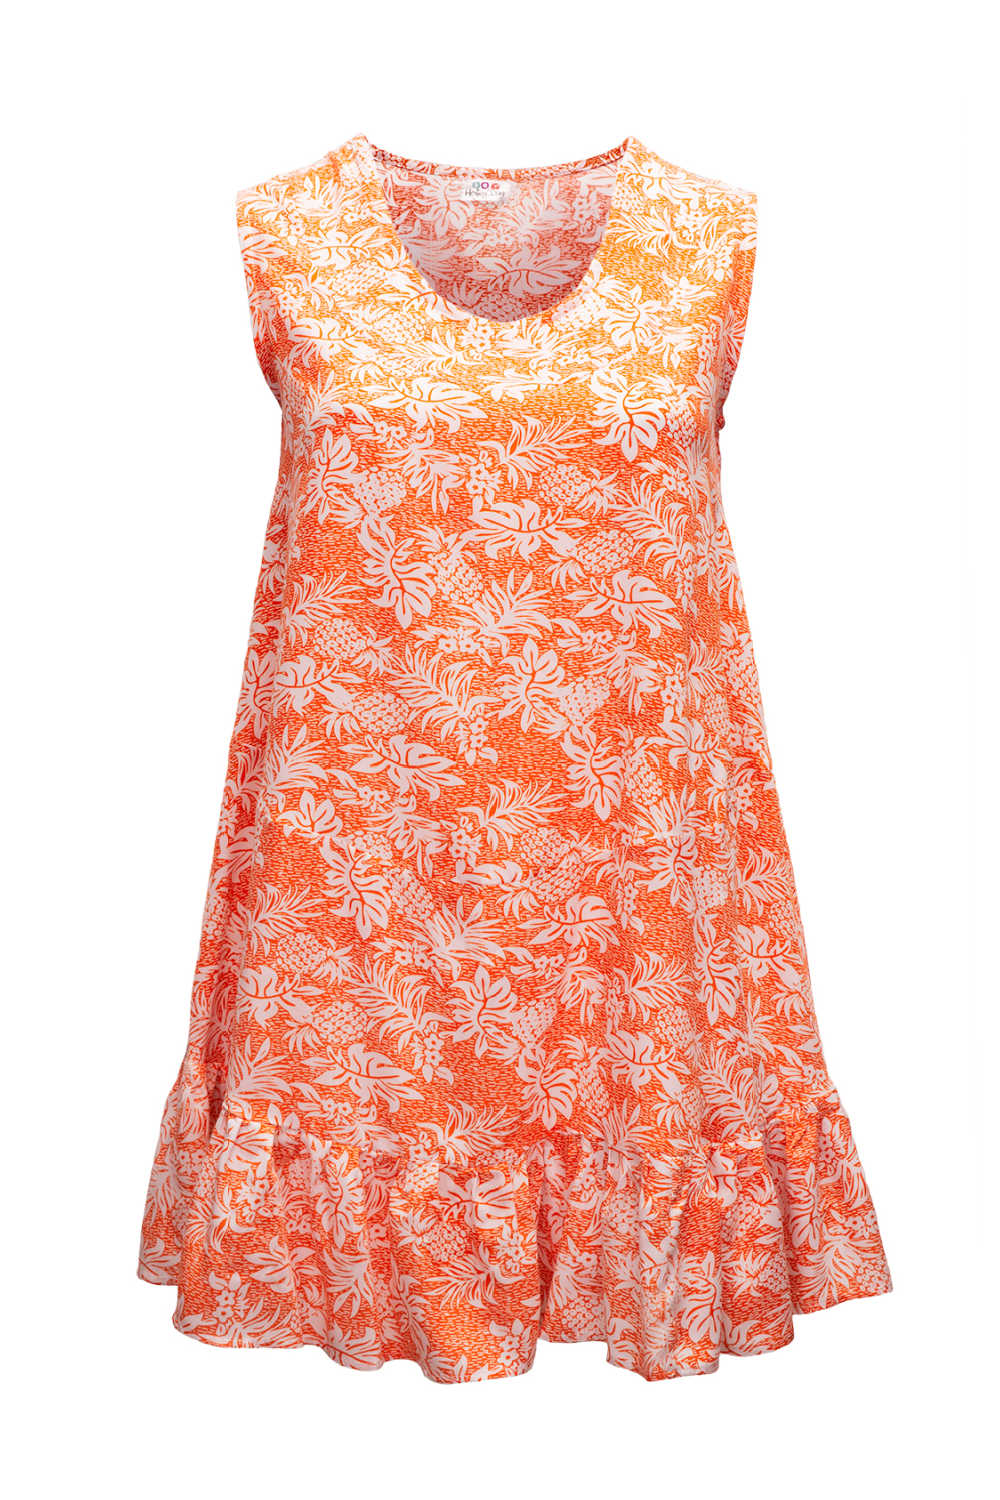 summer-dress-white-orange-pineapple-print-design